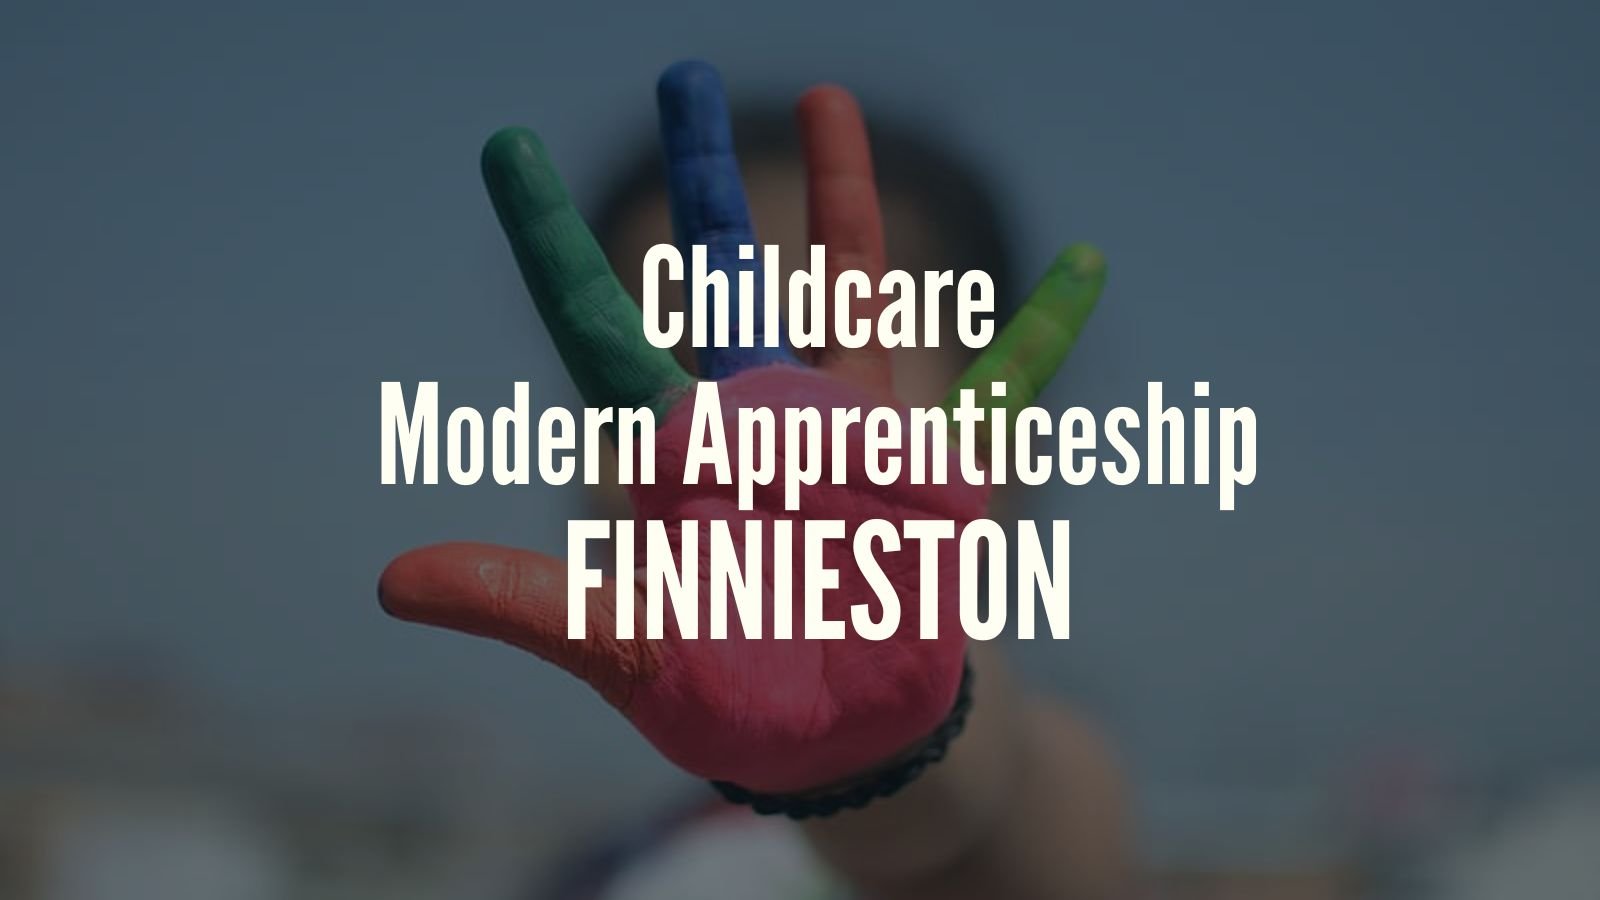 Childcare Modern Apprenticeship Vacancy Finnieston